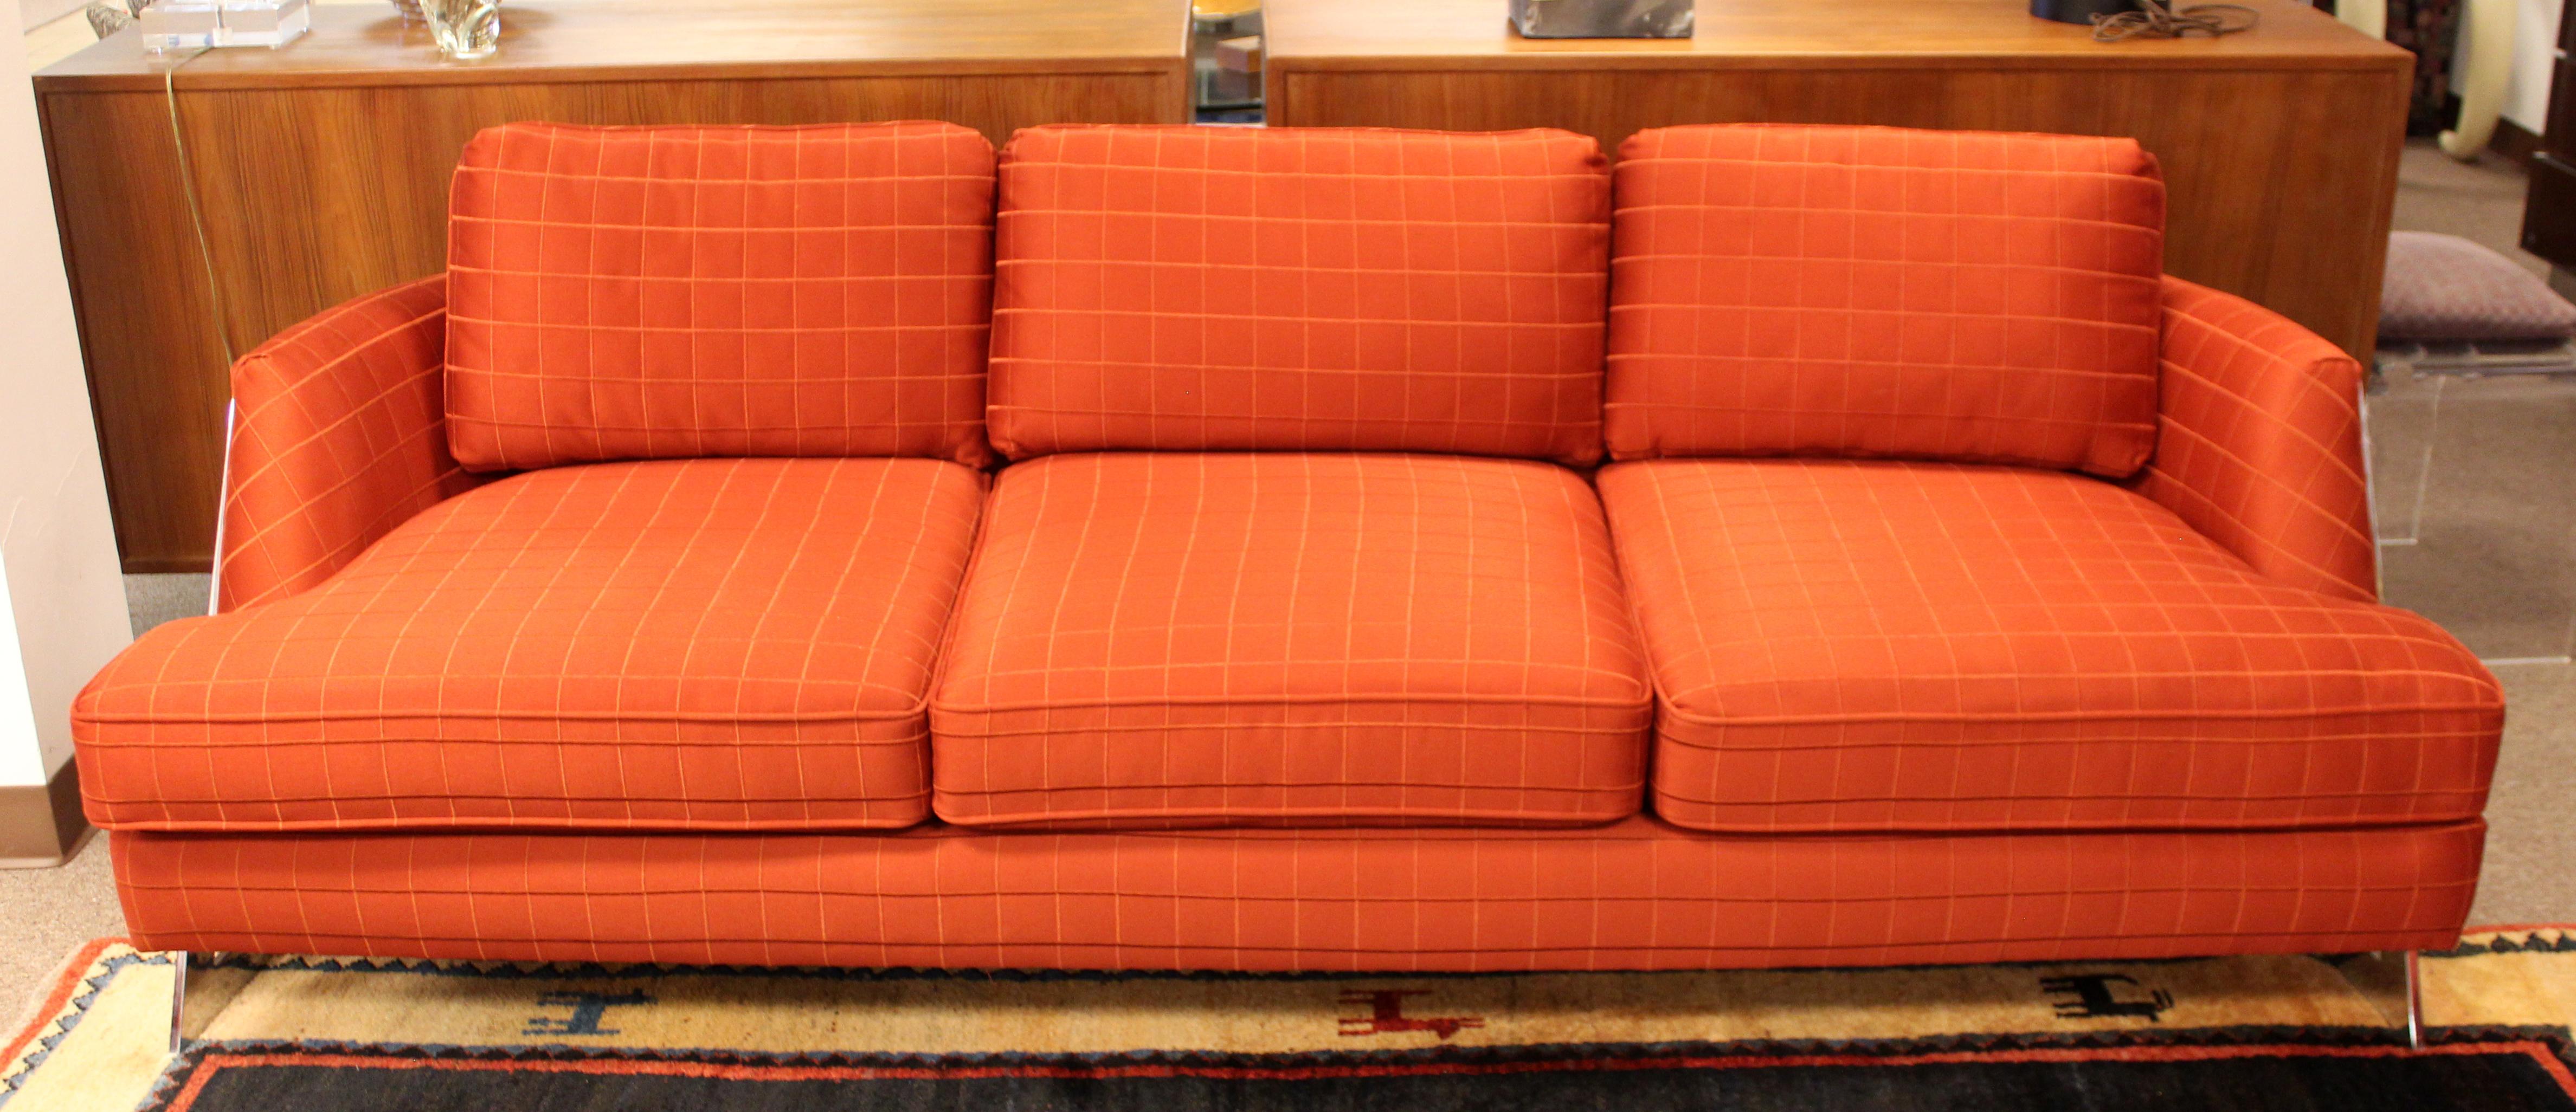 1980s sofa styles